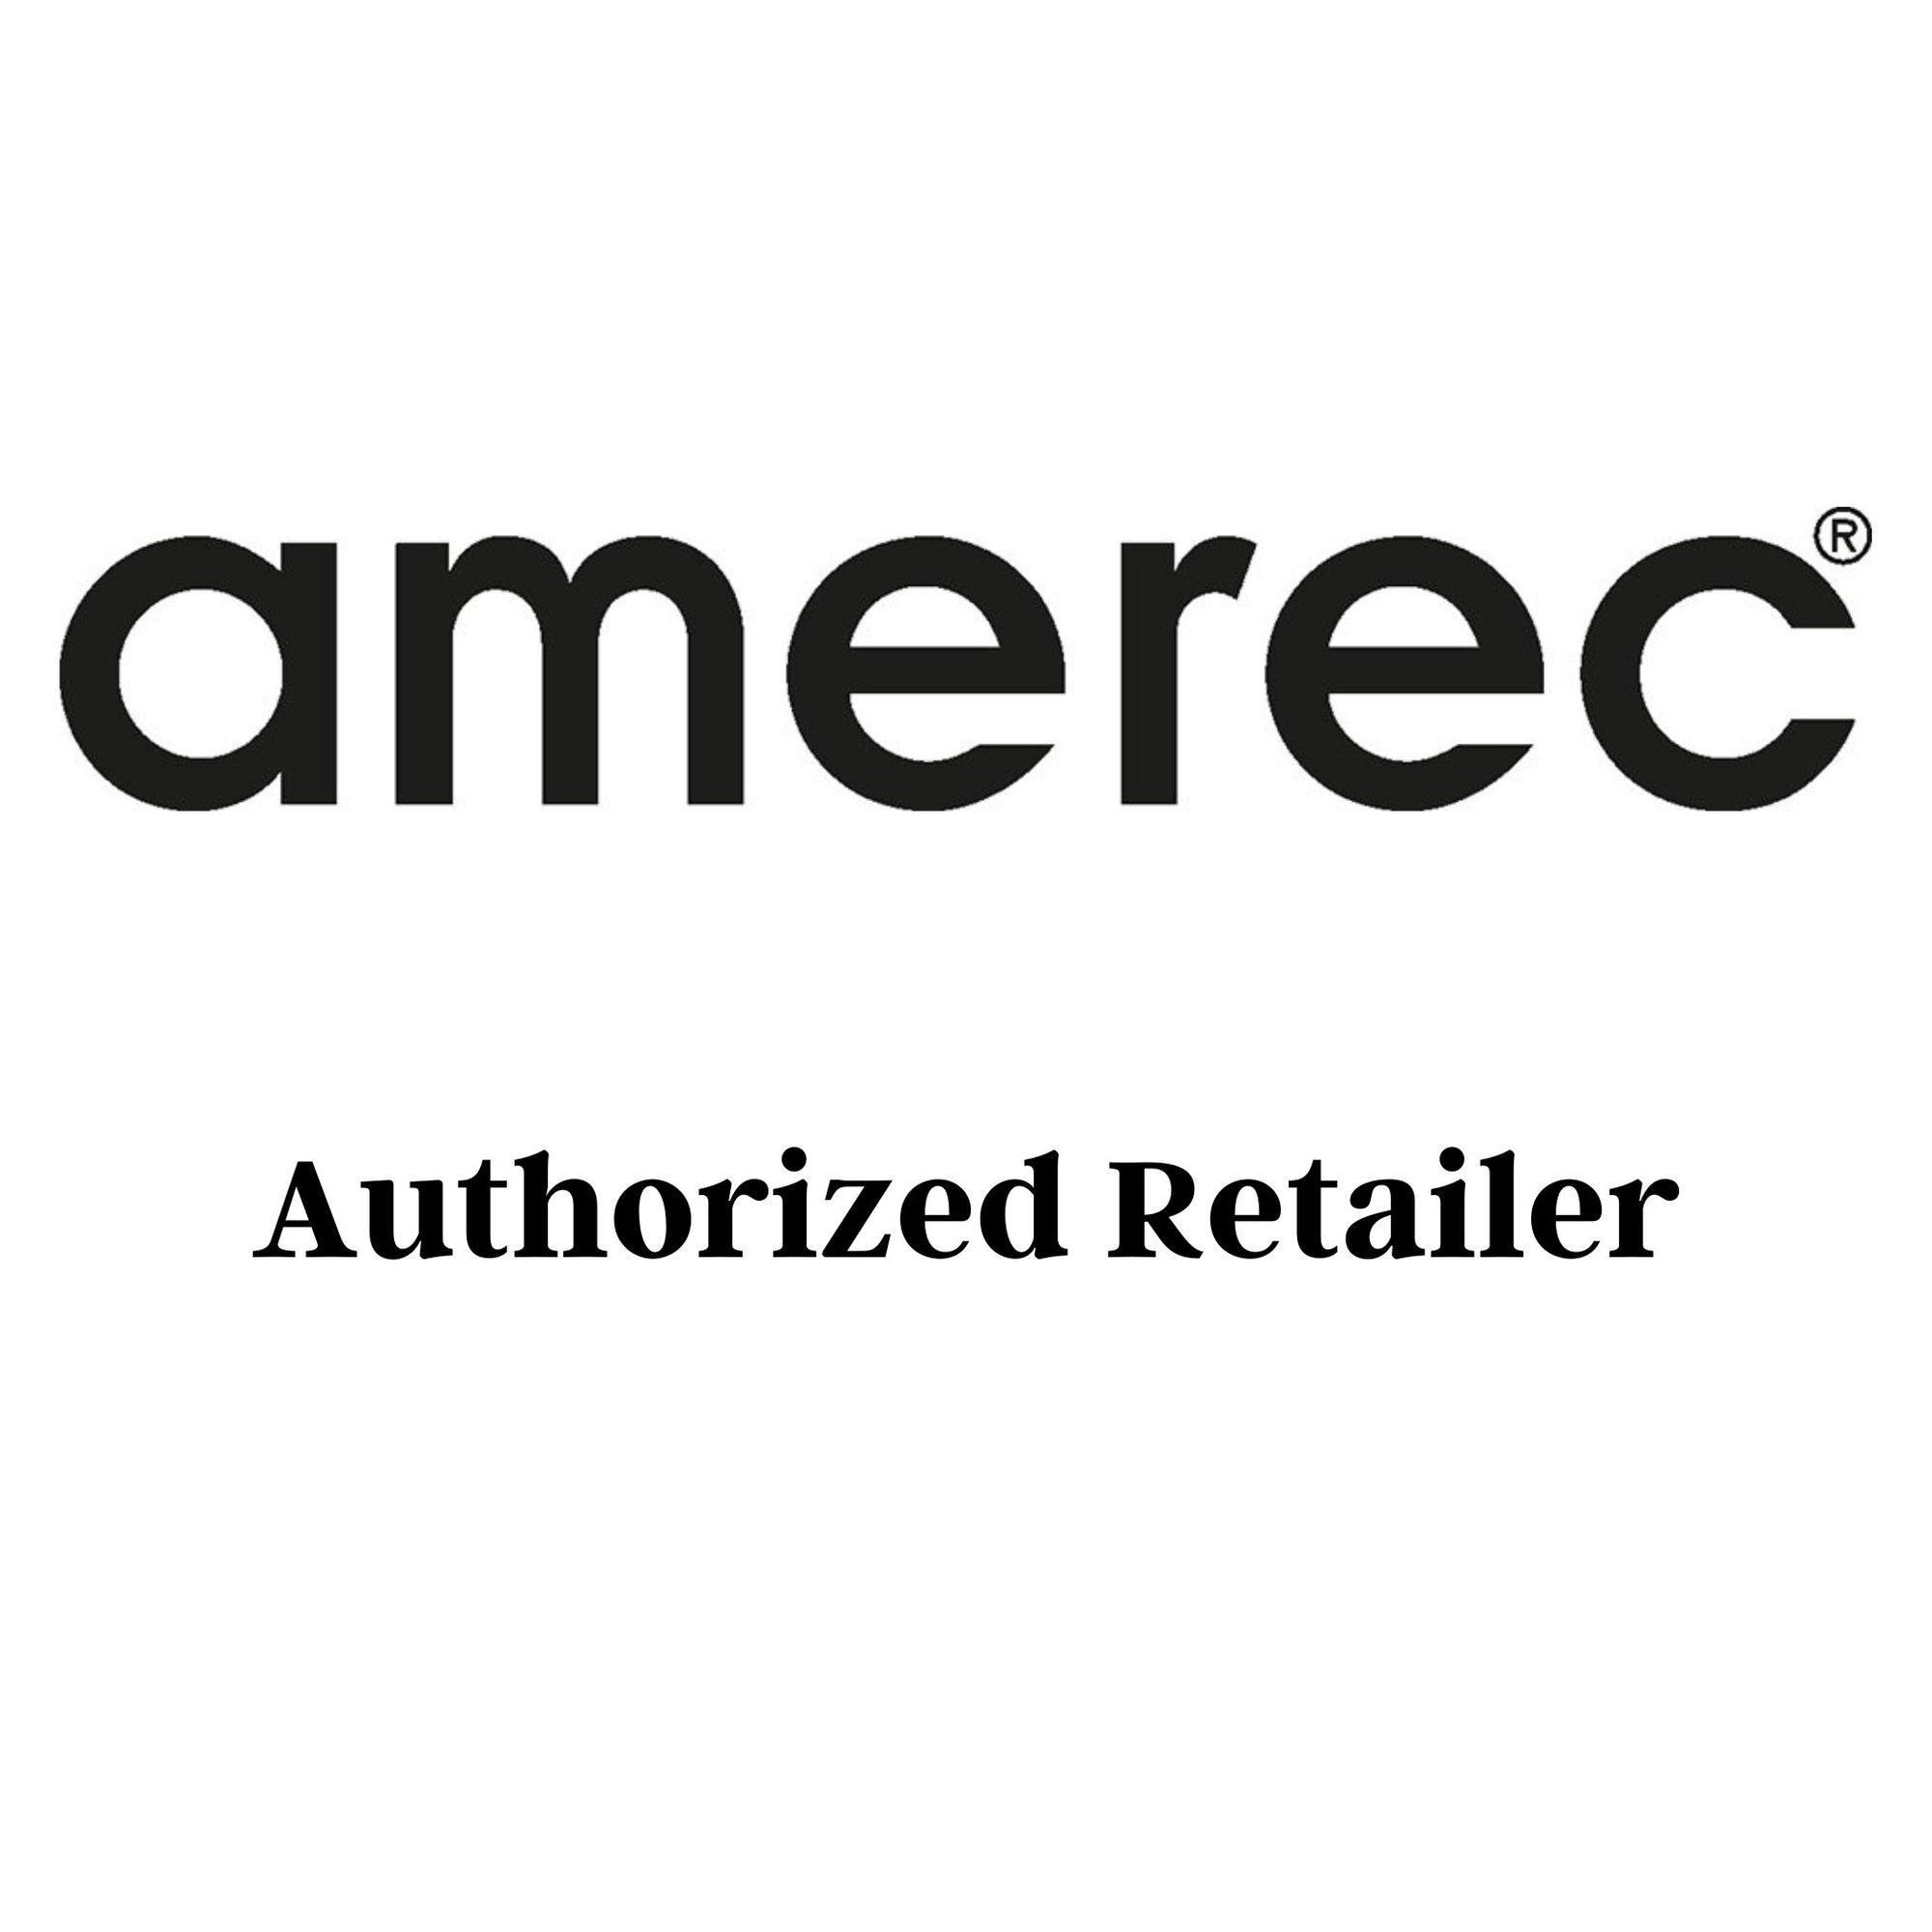 Amerec On/Off & Temperature Control, C105-P/SC-Club 9201-119